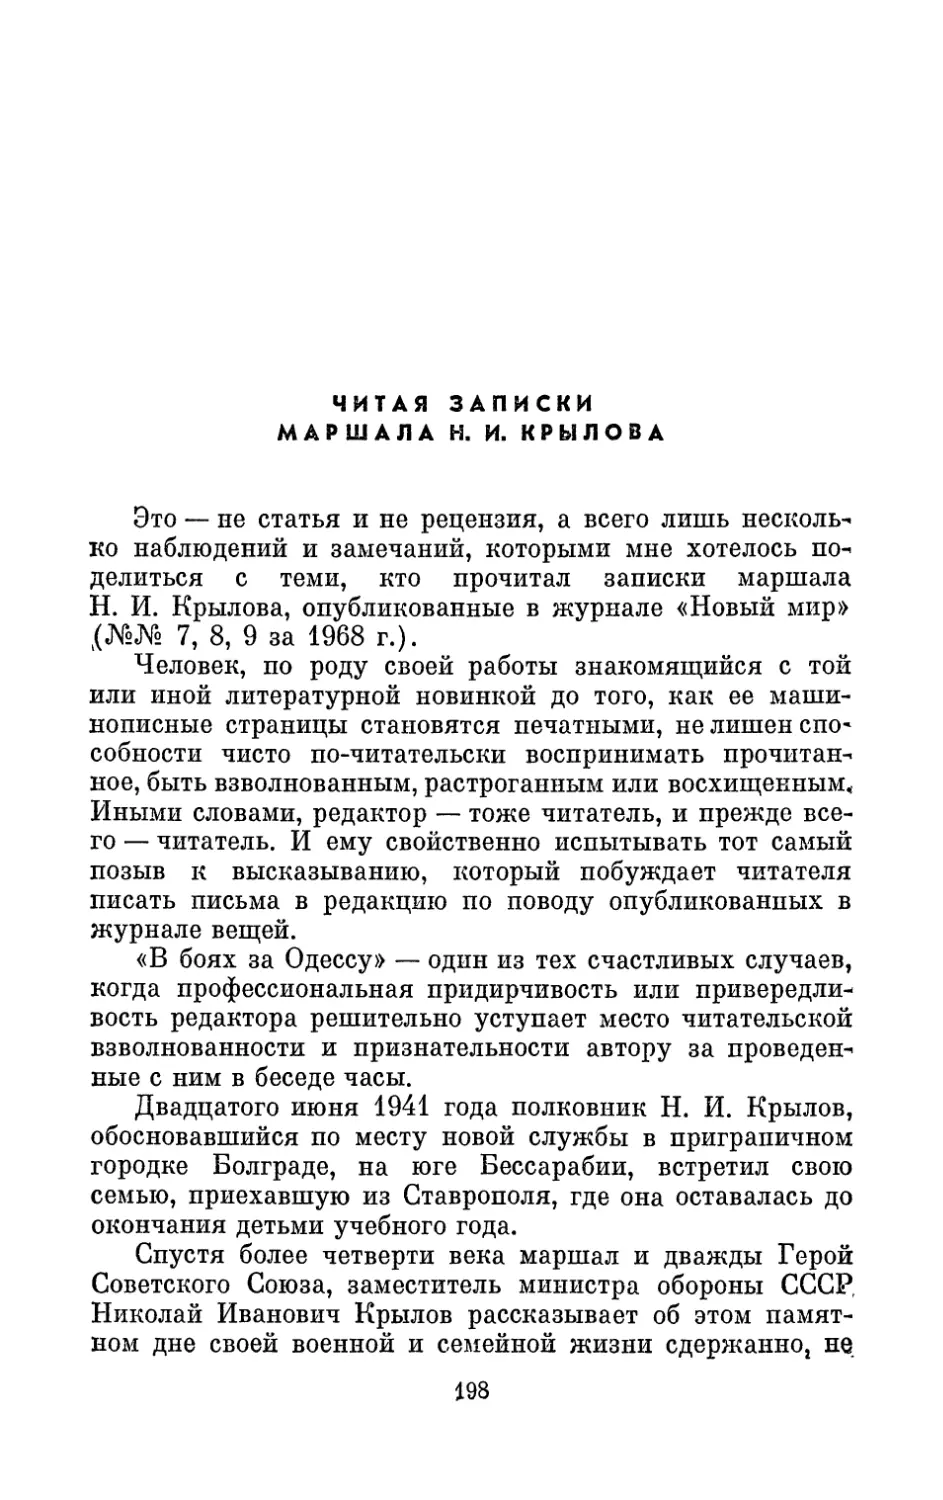 Читая записки маршала Н. И. Крылова